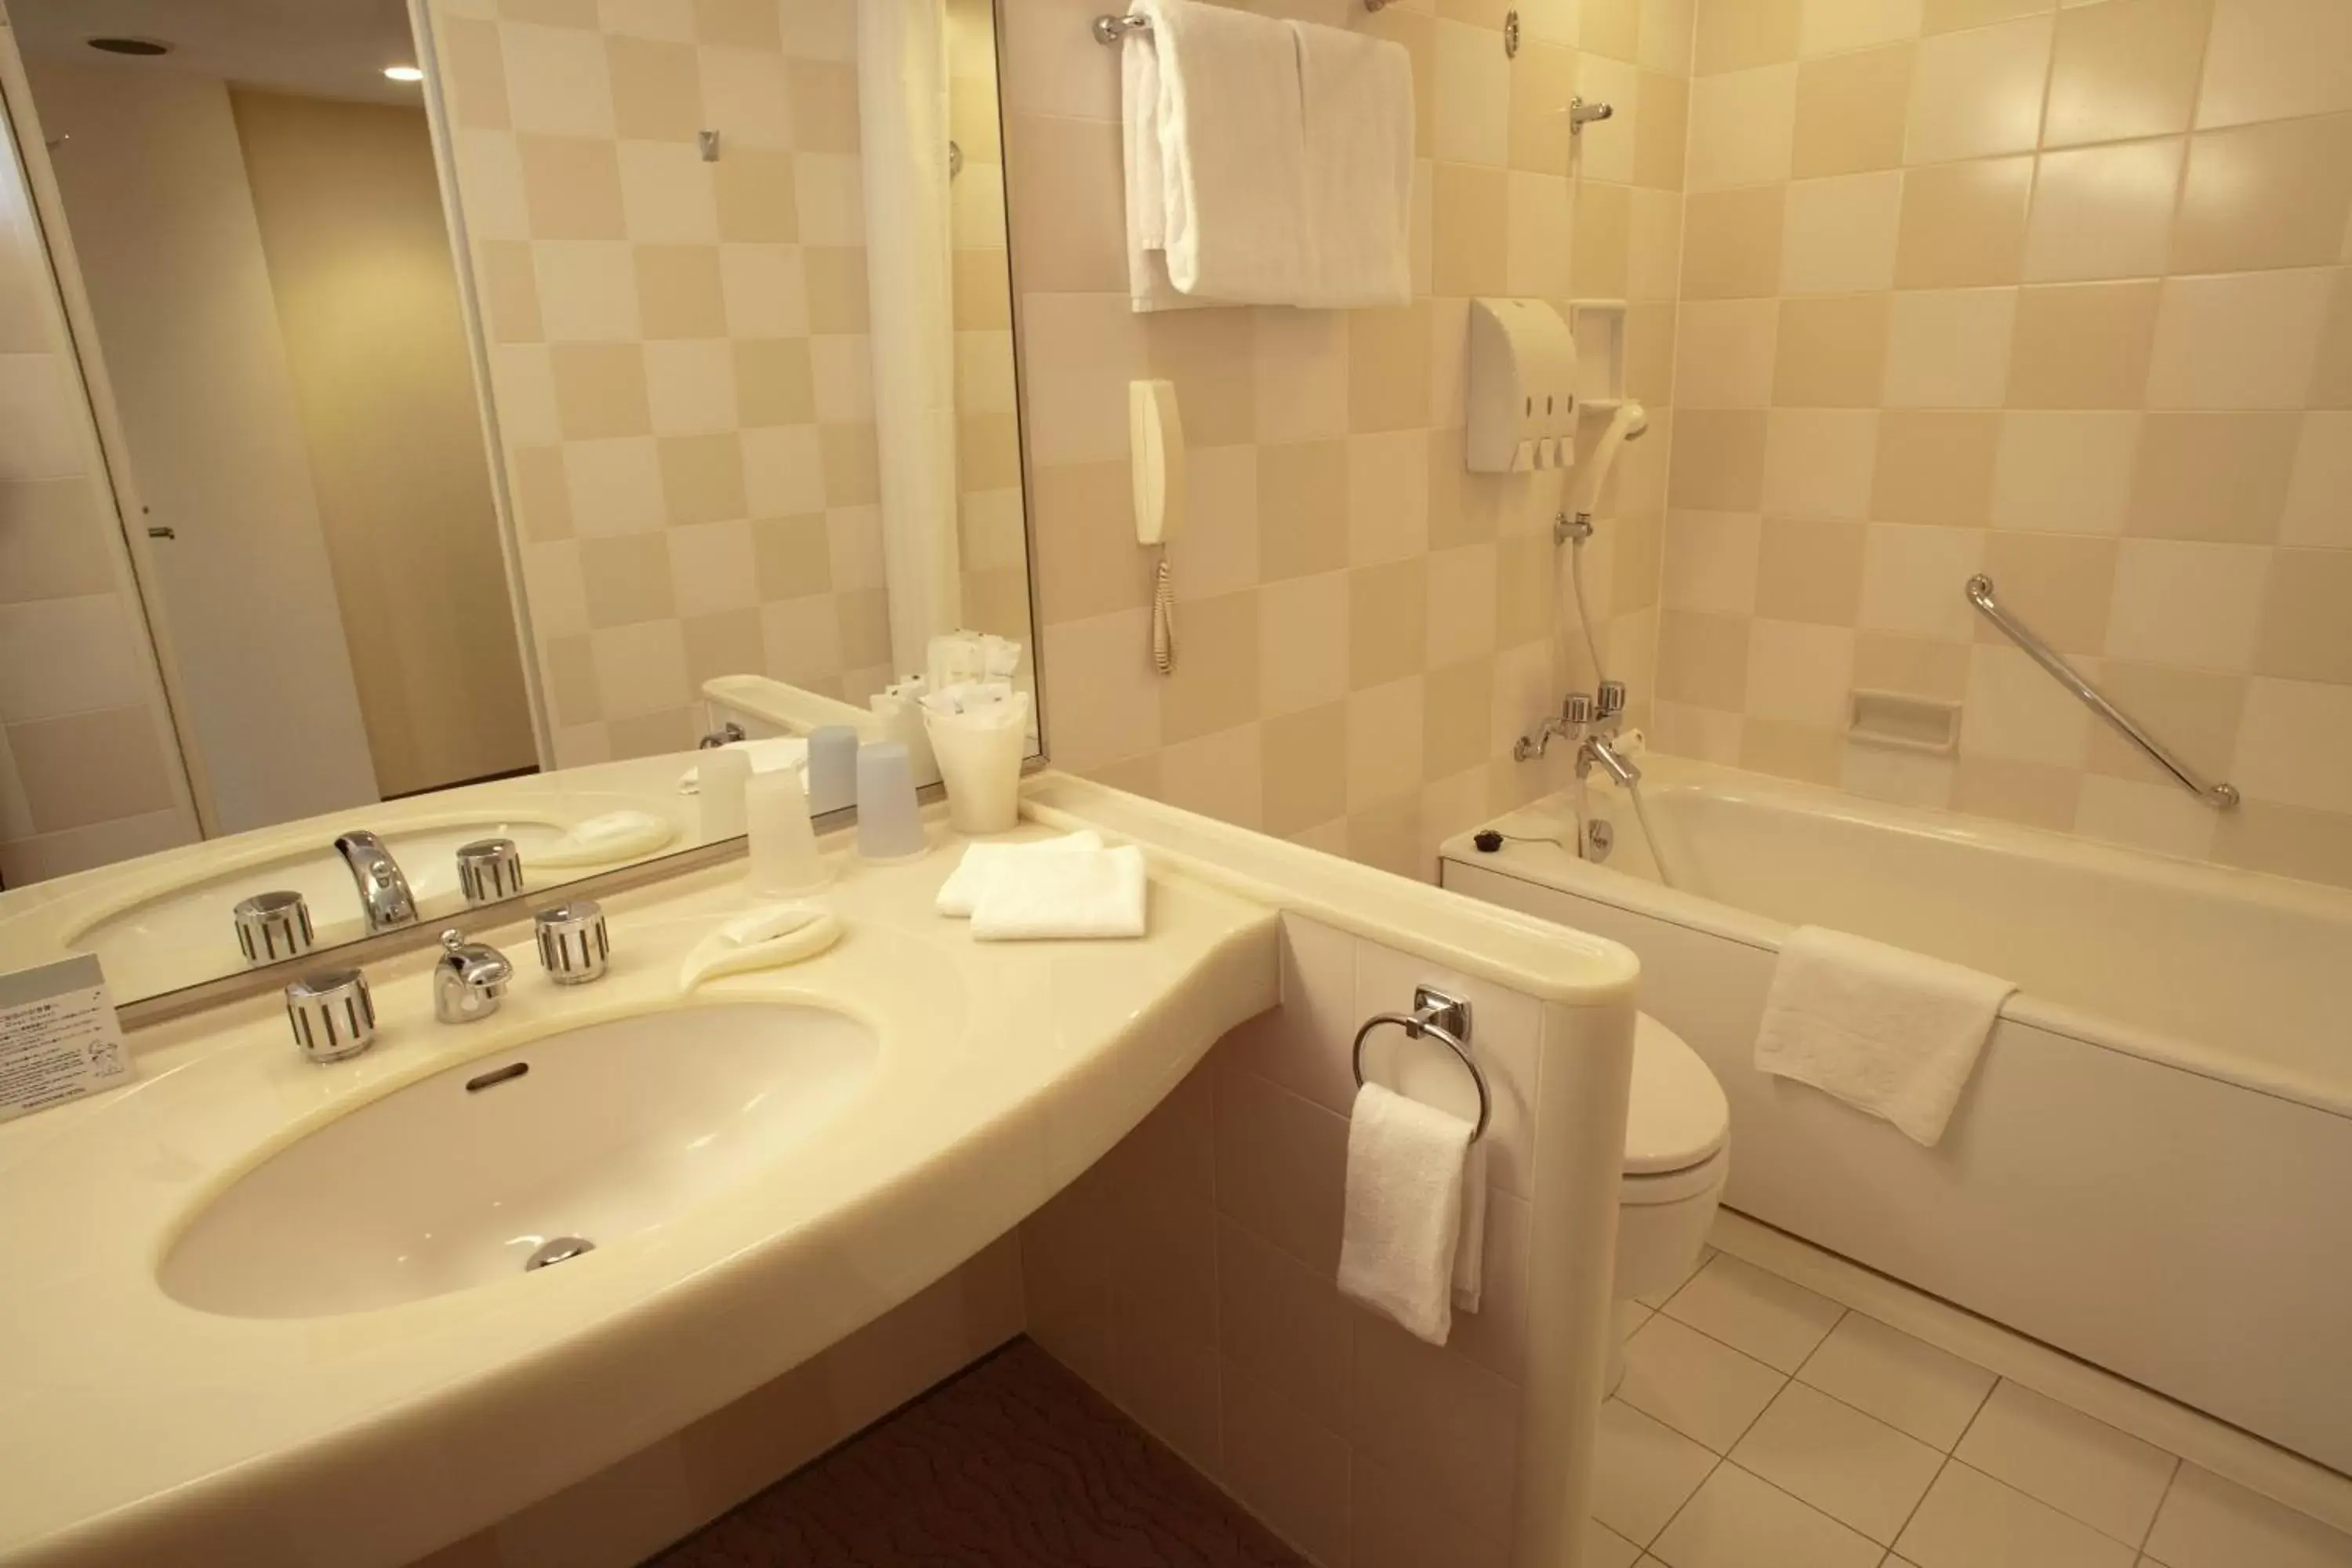 Bathroom in Tokyo Dome Hotel